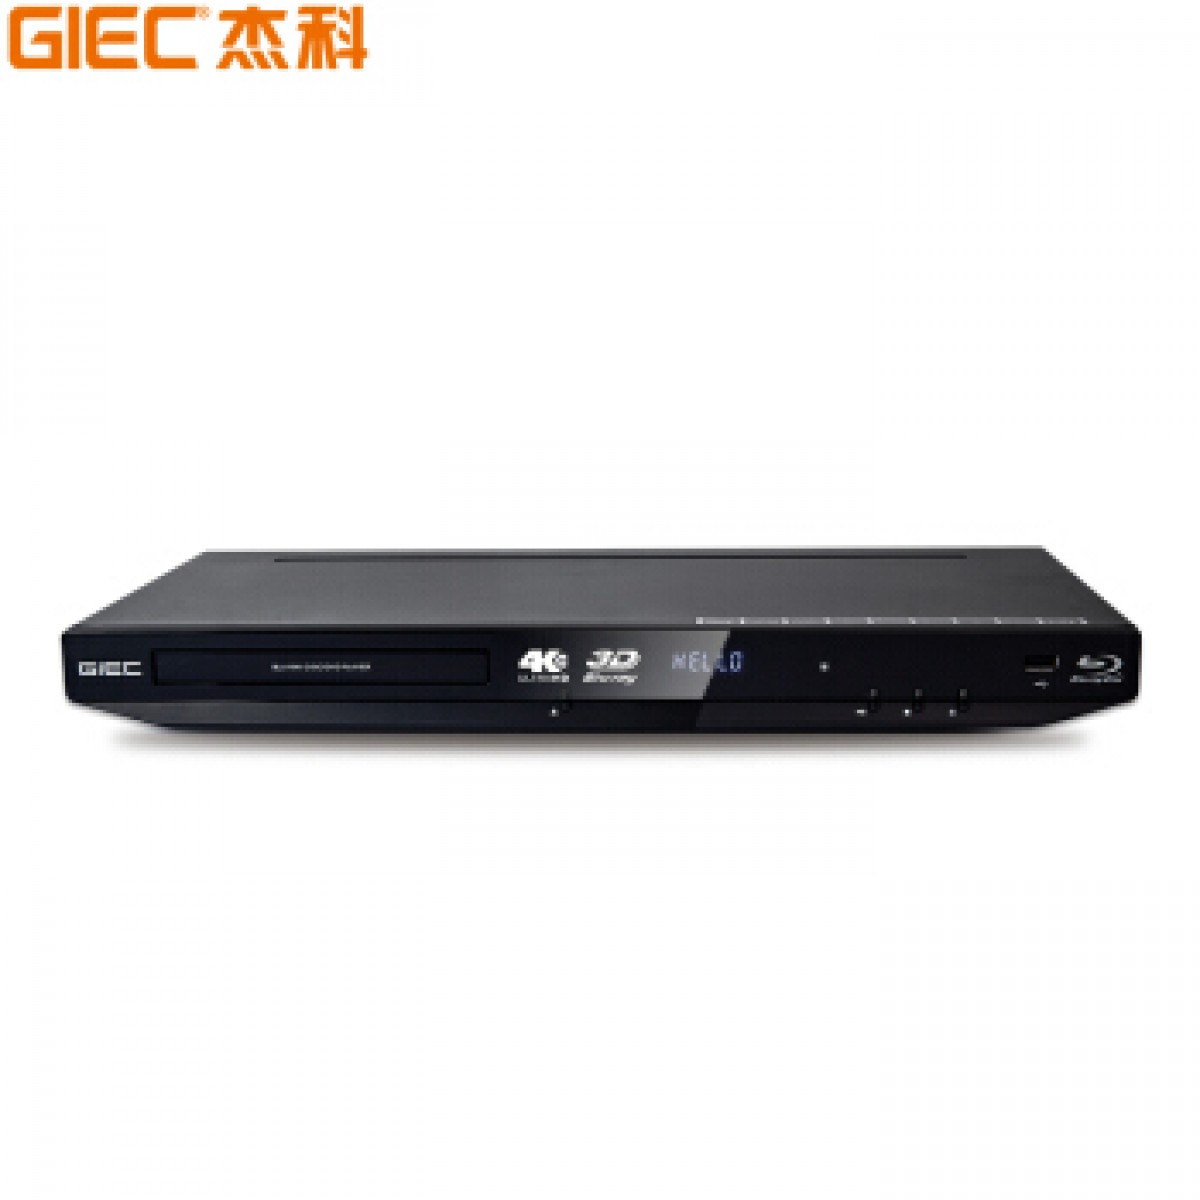 杰科(GIEC)BDP-G4350 4K蓝光播放机3D高清DVD影碟机 蓝光DVD播放器VCD播放机CD机EVD碟机 USB光盘硬盘播放器